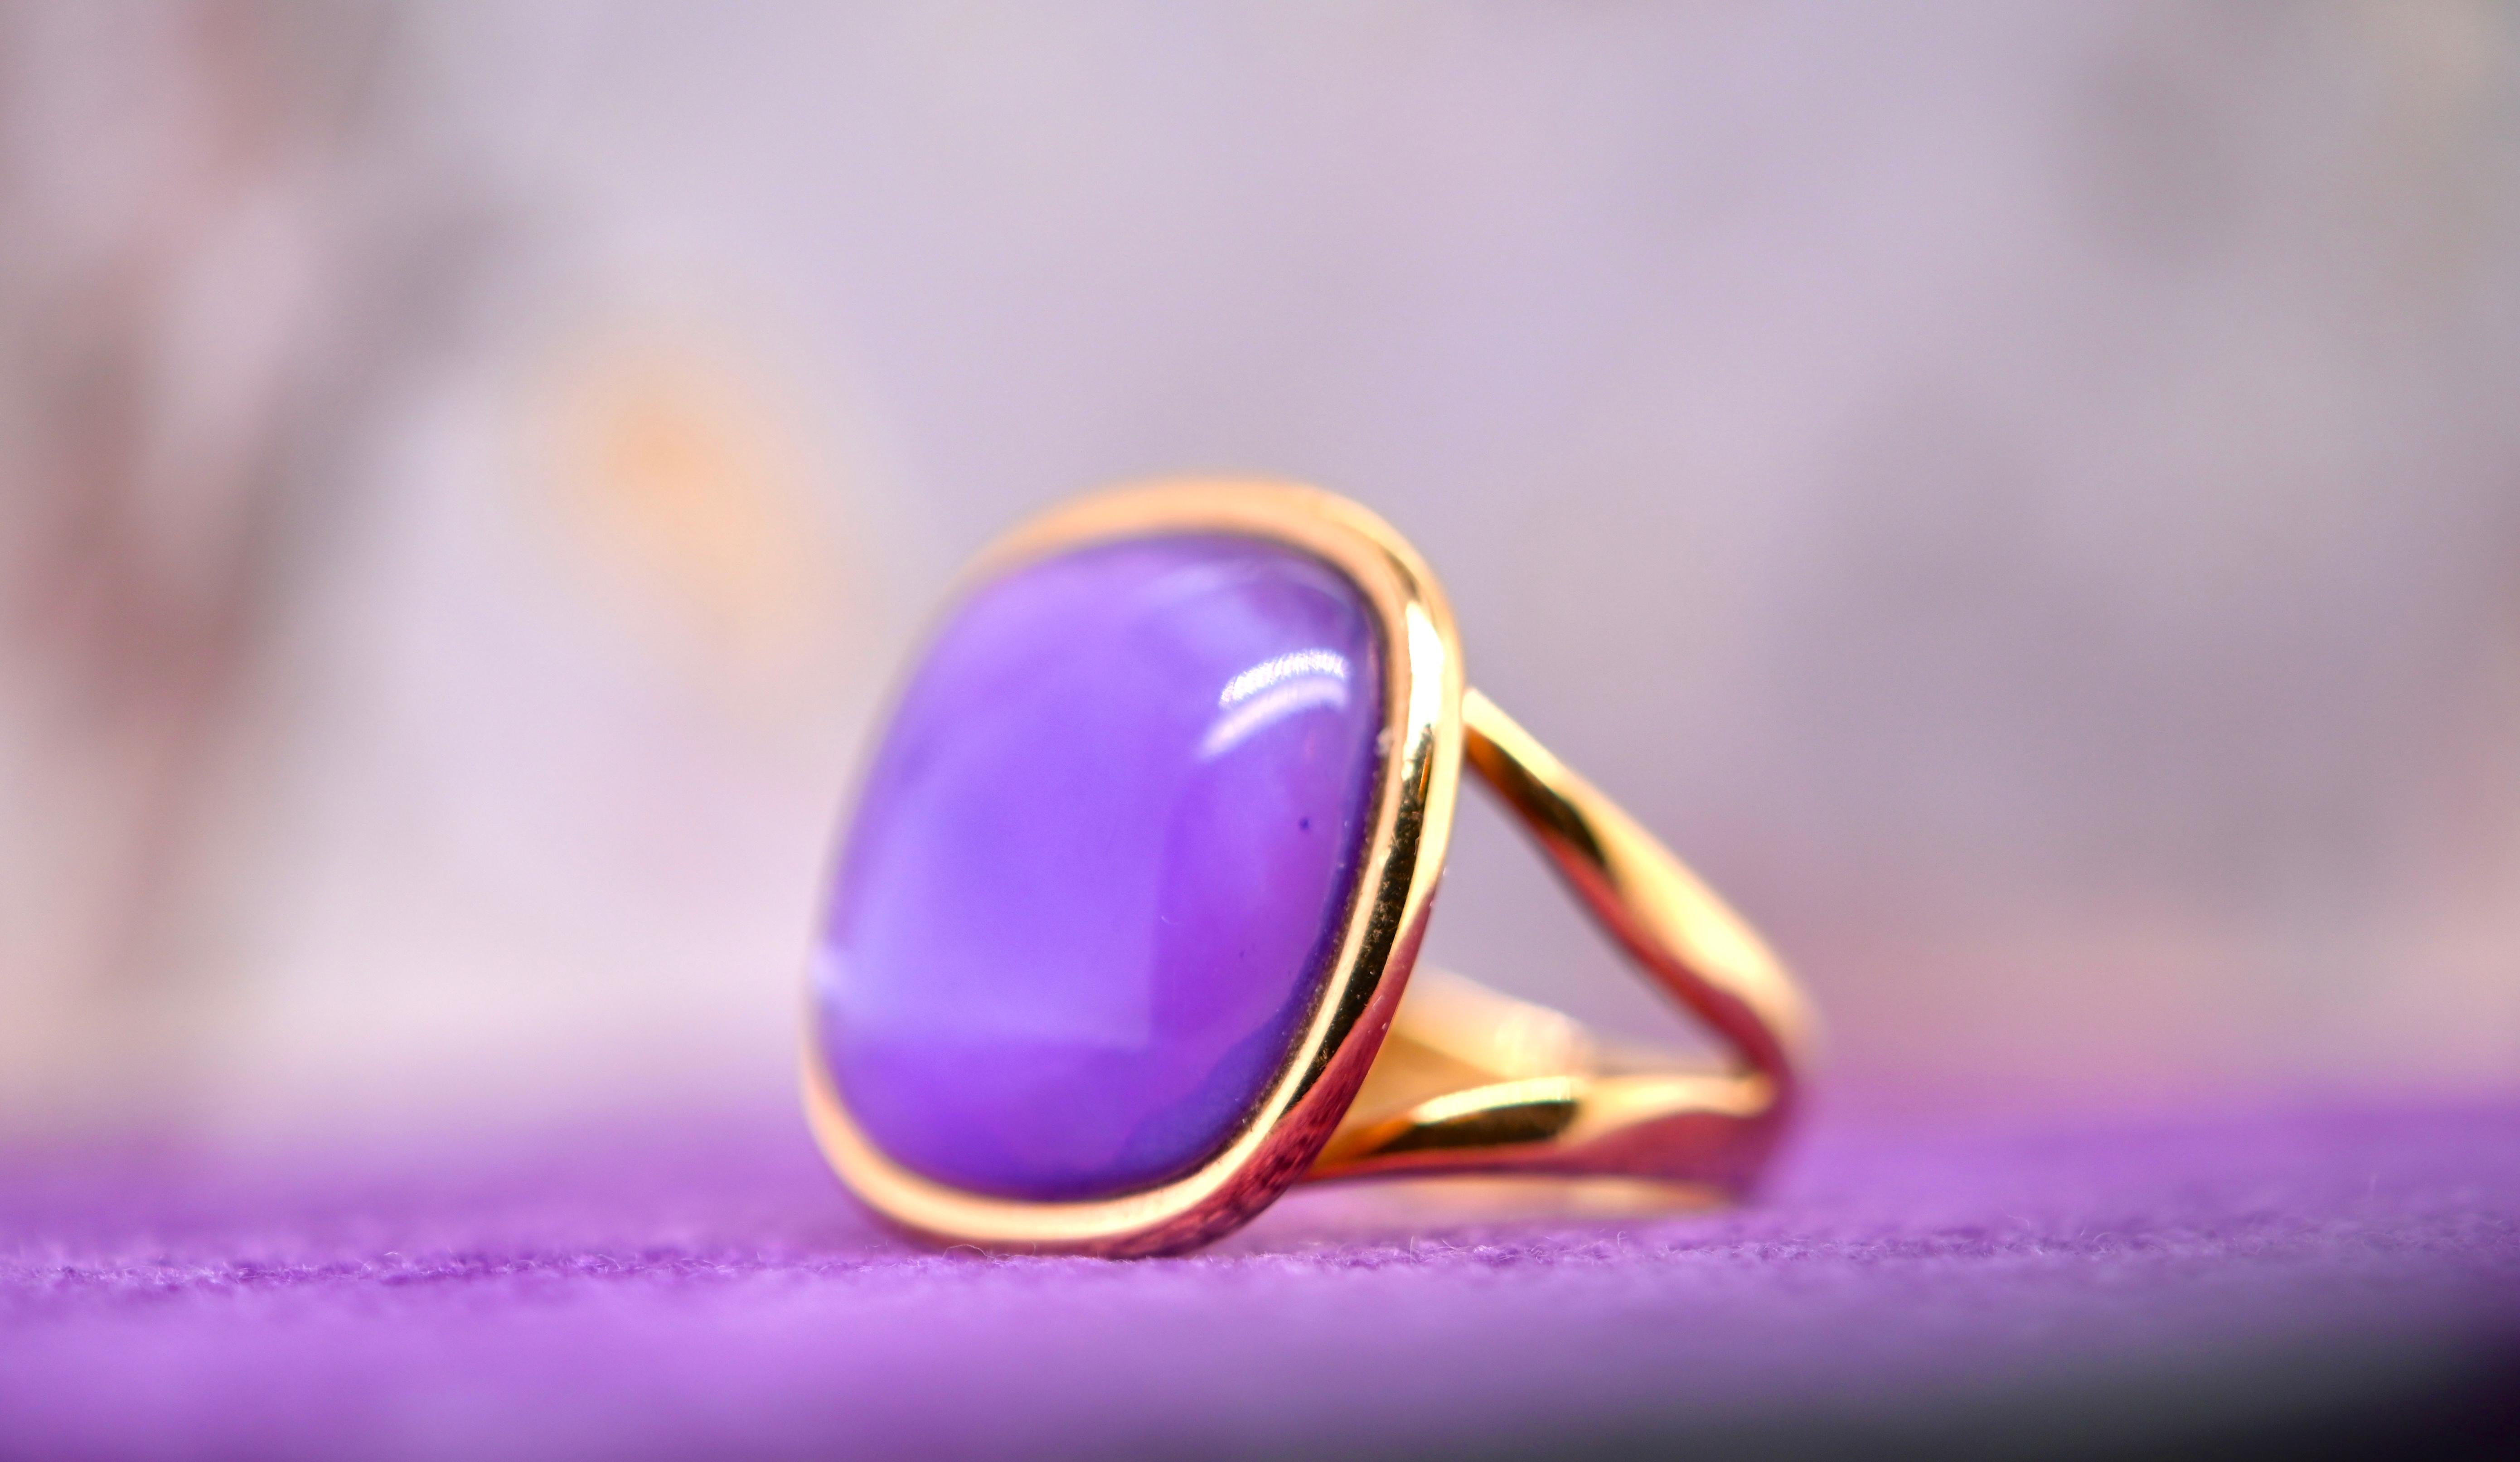 Dieser Ring verbindet die zeitlose Eleganz von 18 Karat Roségold mit der bezaubernden natürlichen Schönheit des Amethysts. Ein Juwel, das die Augen fesselt und die Ausstrahlung Ihrer einzigartigen Persönlichkeit widerspiegelt.

Das Gewicht des